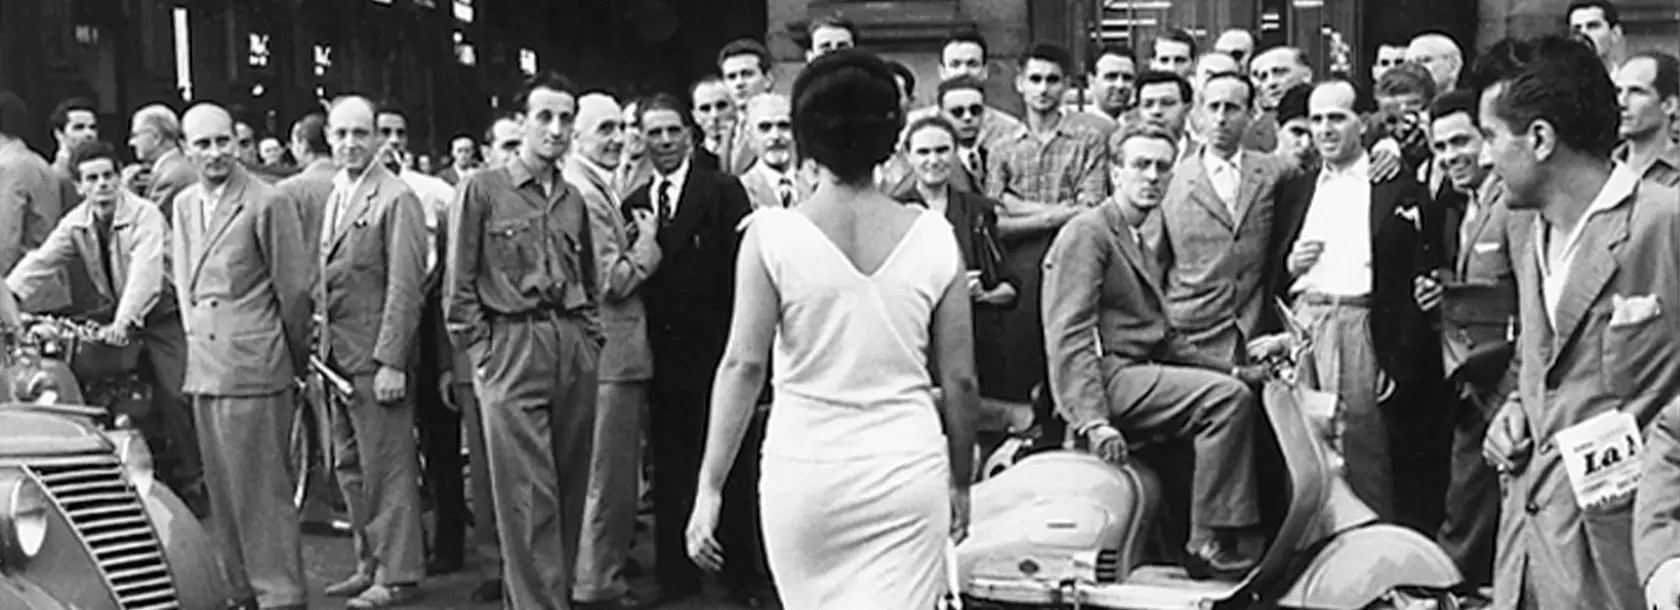 Fotografia in bianco e nero “Gli Italiani si voltano” che ritrae Moira Orfei mentre passeggia per Milano nel 1954, scattata da Mario De Biasi.